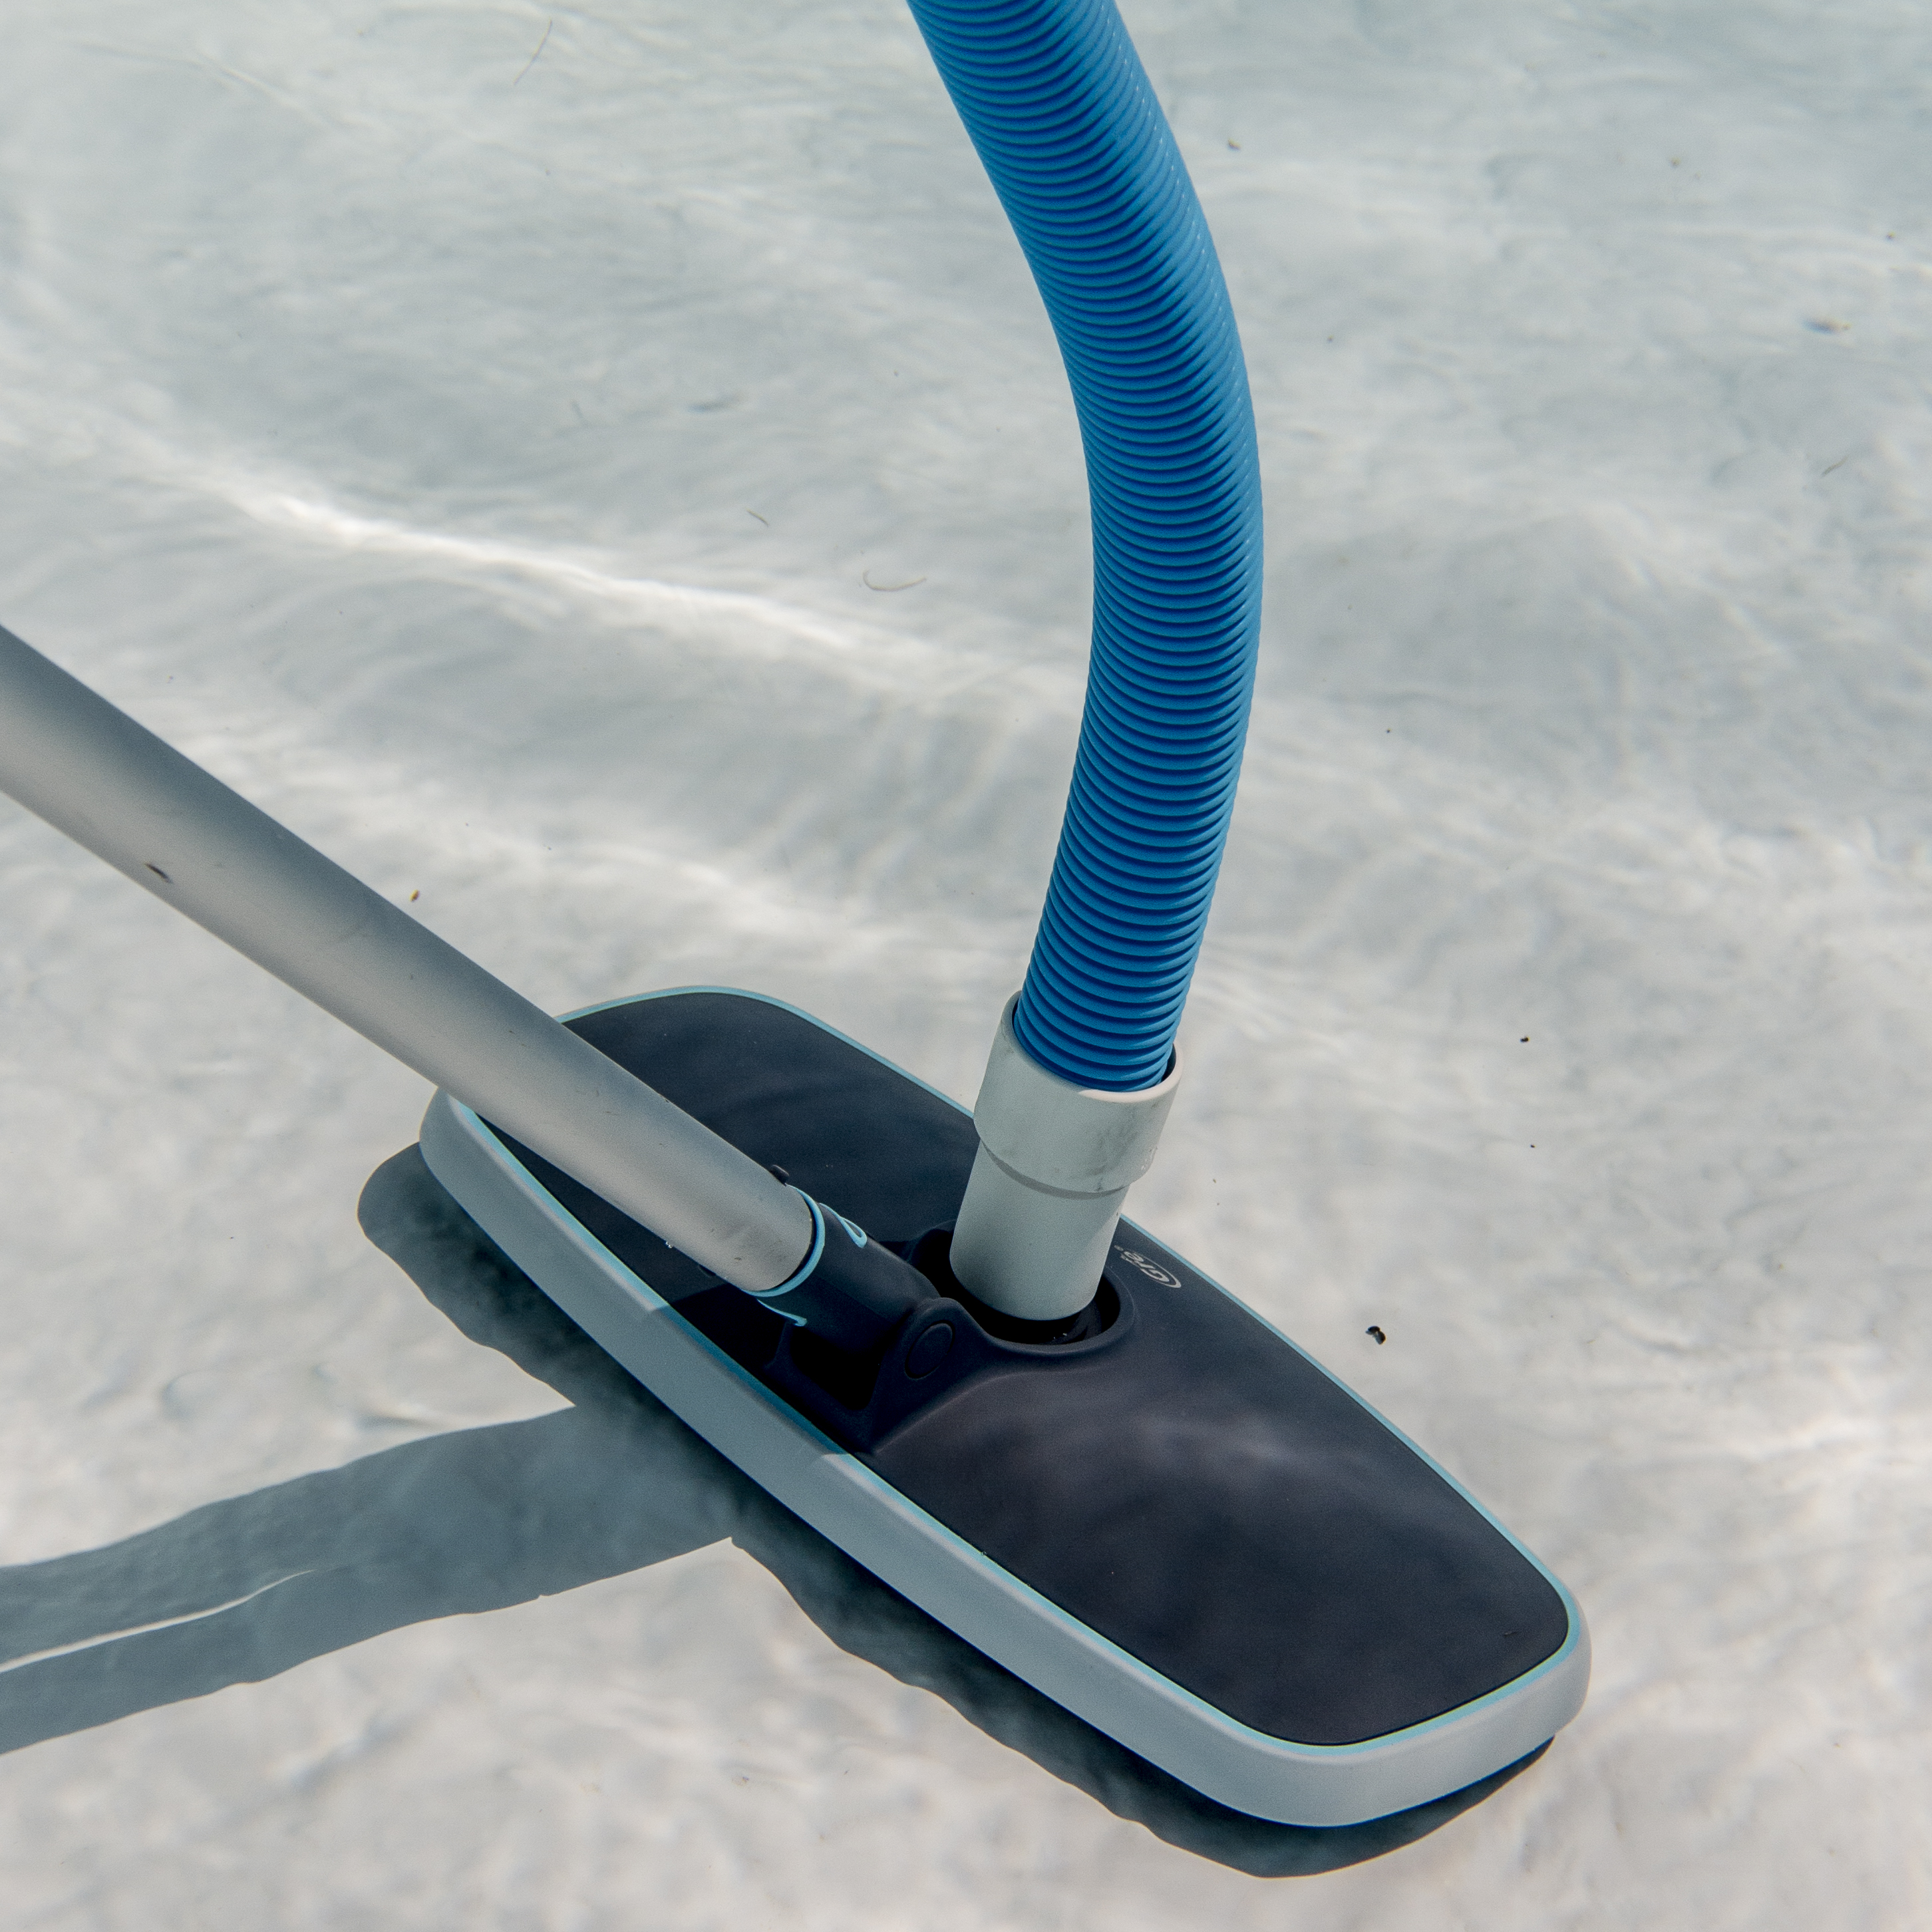 Mejores limpiafondos eléctricos y manuales para la piscina - Blog